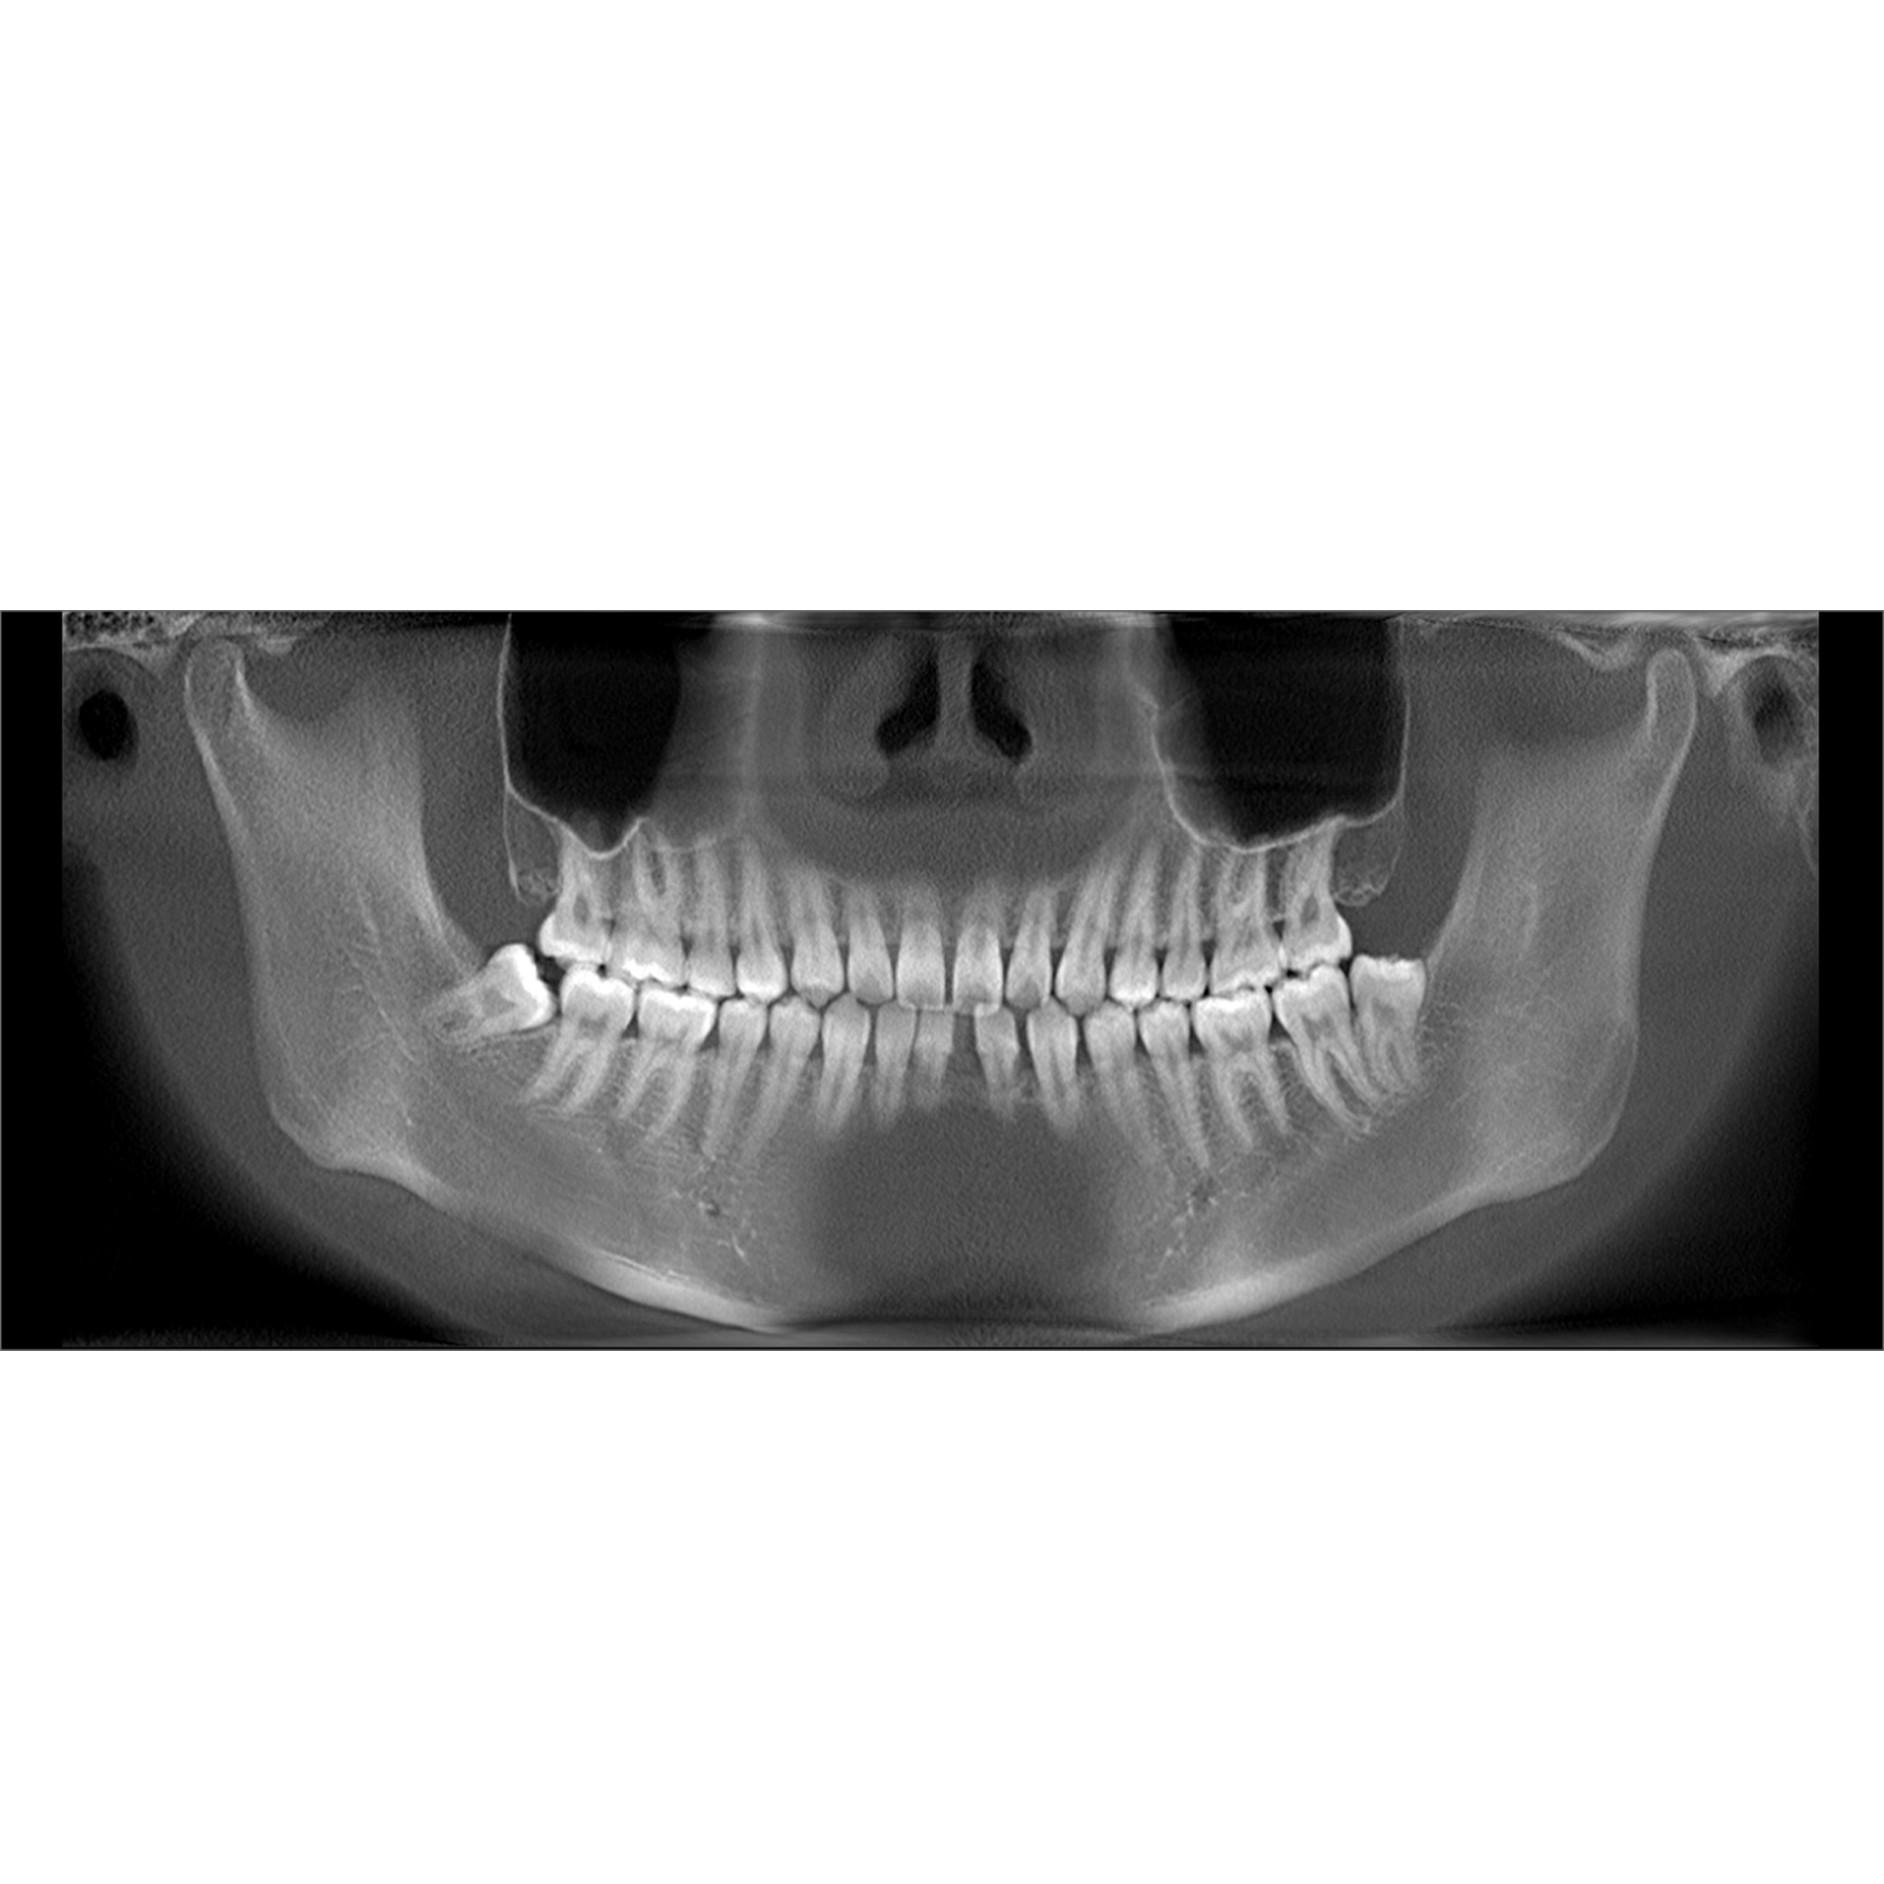 整齐的牙齿标准ct图片